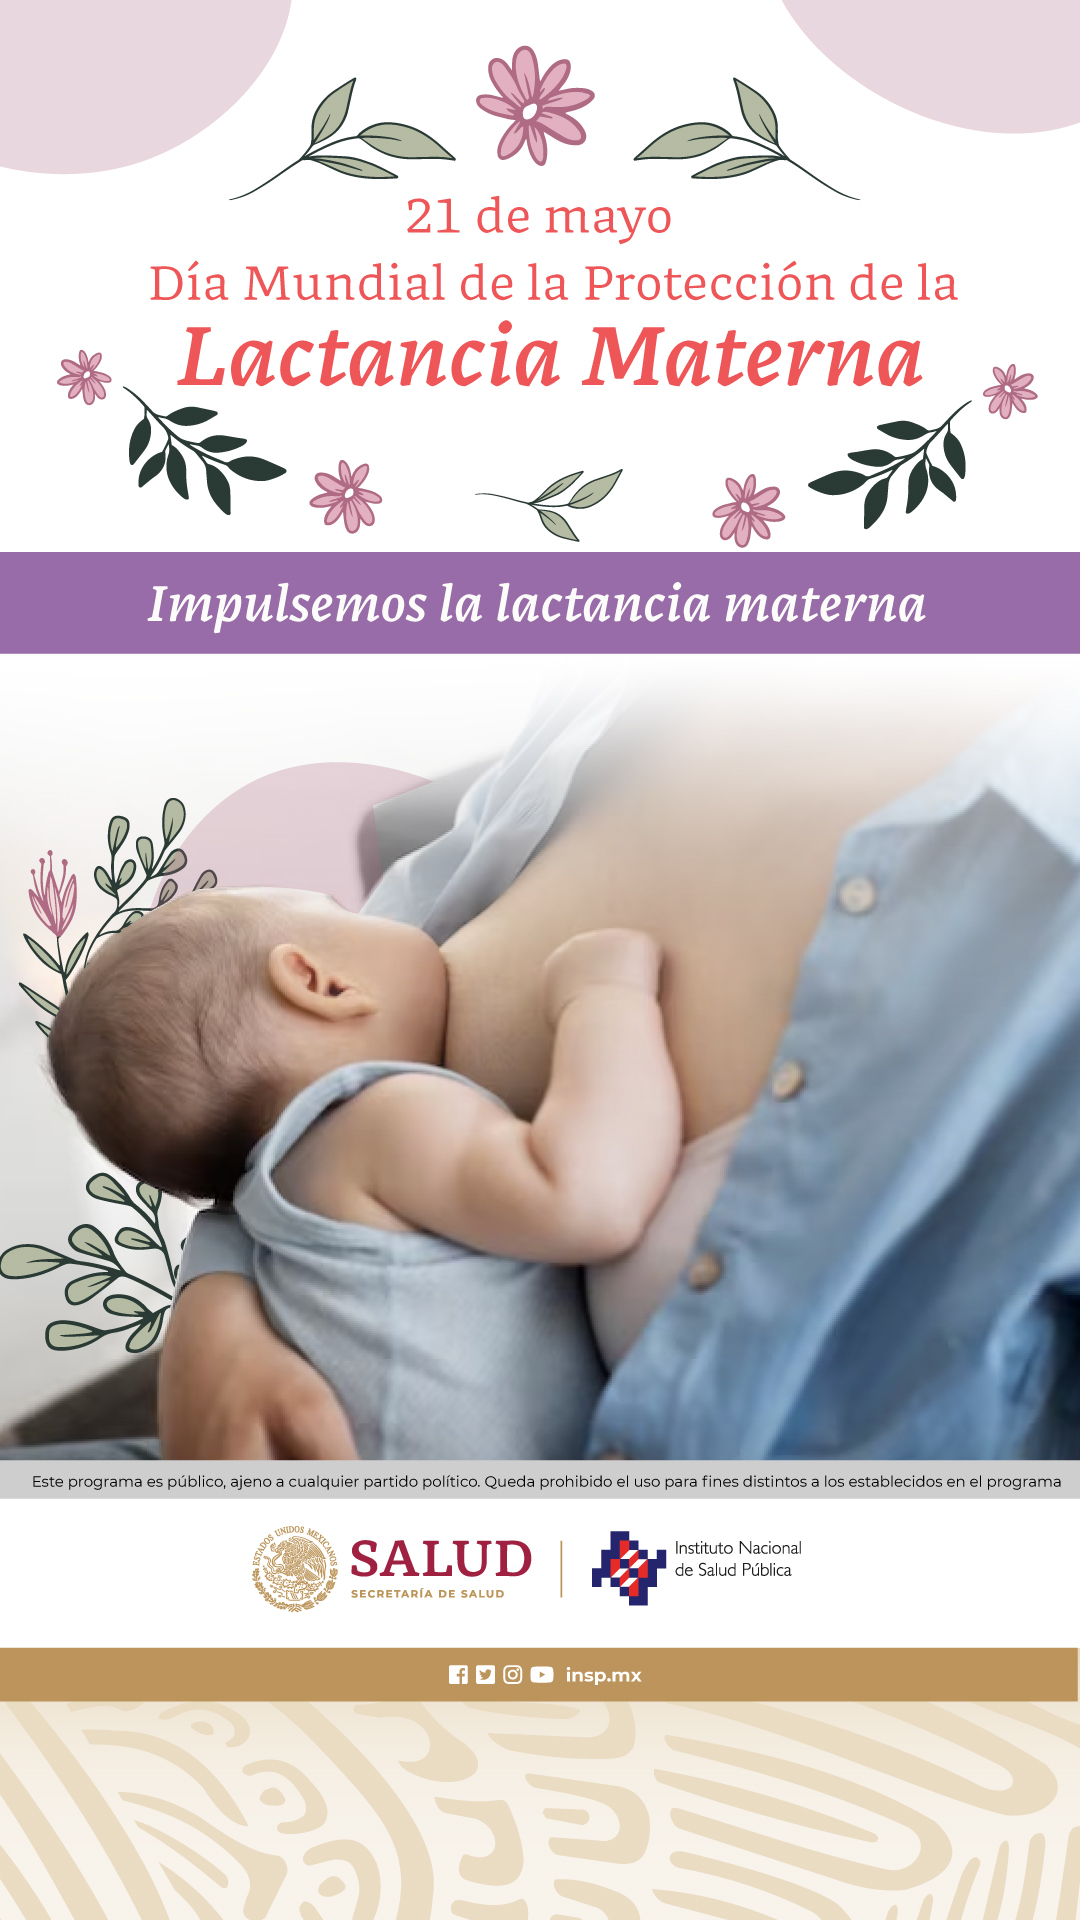 21 de Mayo, Día Mundial de la Protección de la Lactancia Materna”